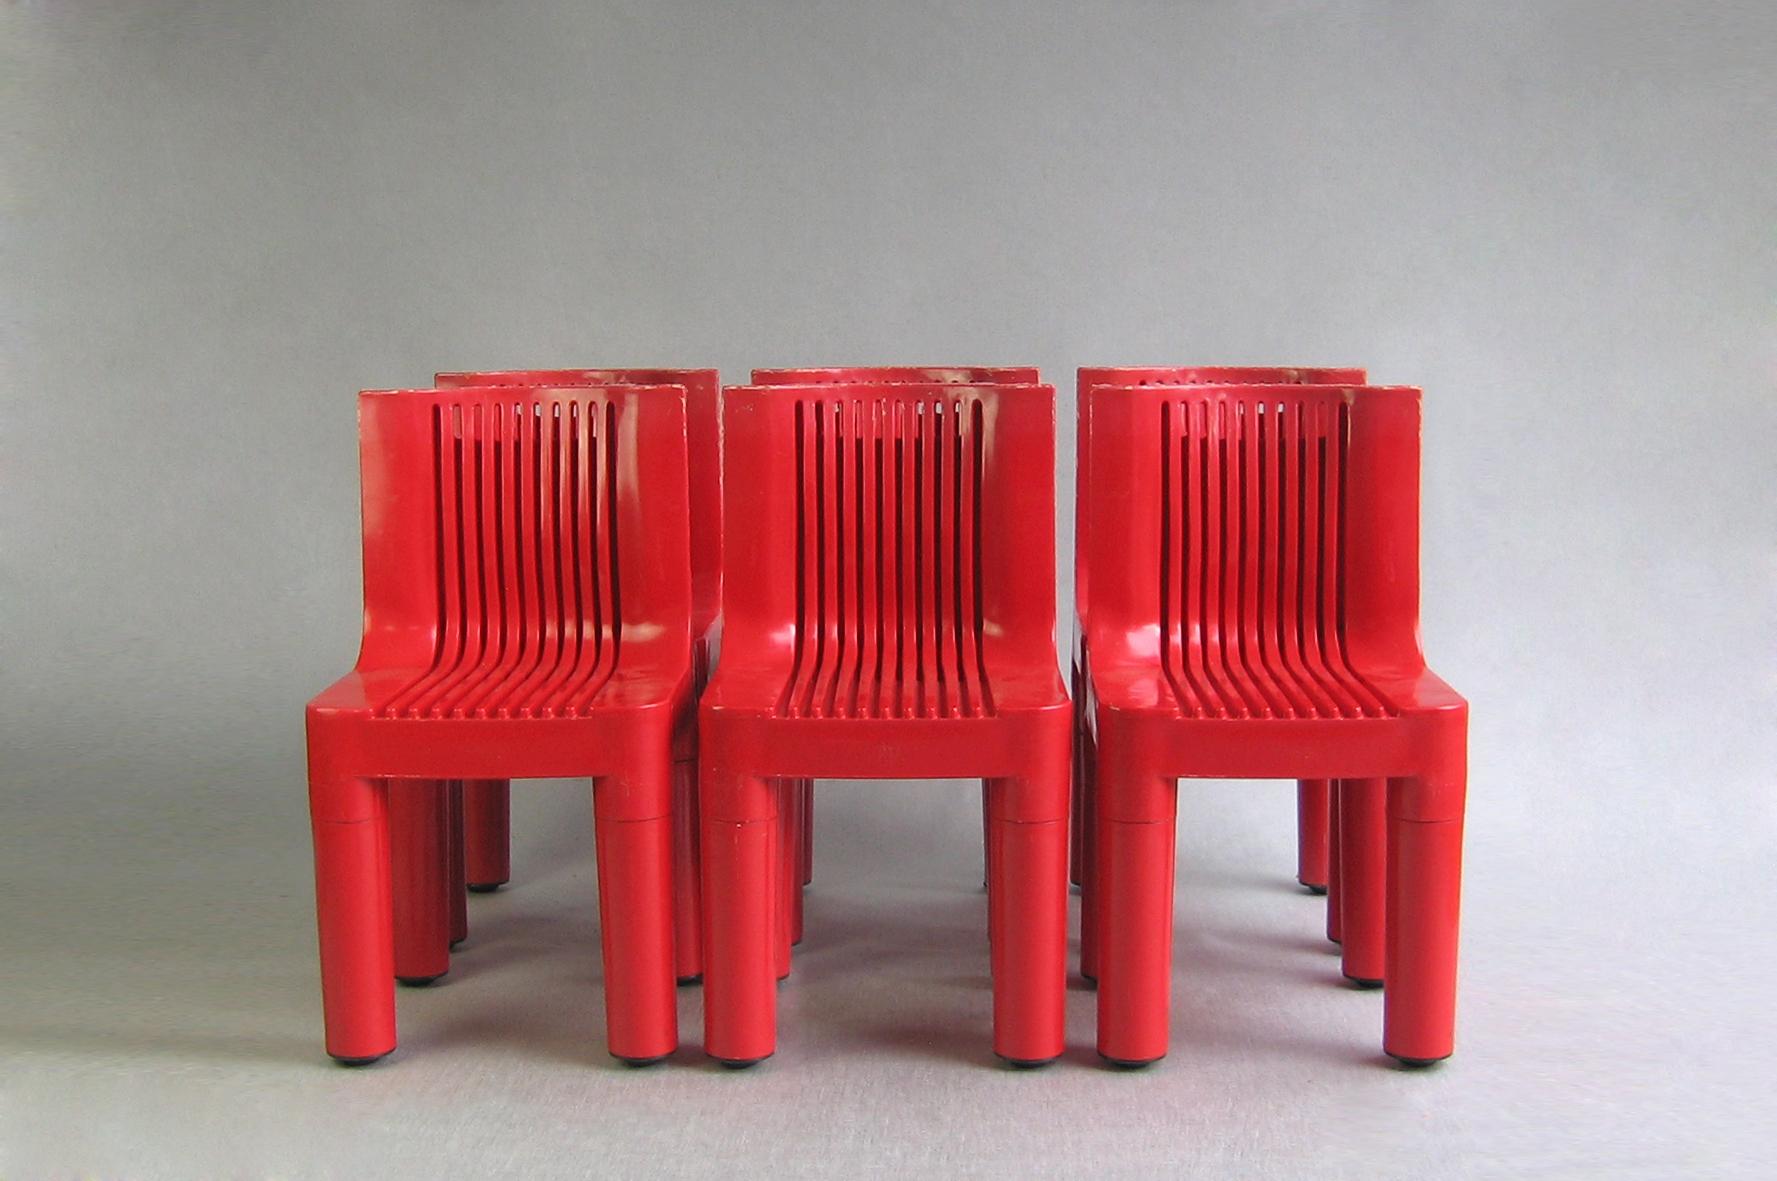 6x Stuhl Modell 4999/5 Kartell 
Marco Zanuso 1964 / Sehr seltene originale Erstproduktion!

Die Stühle sind in gutem Vintage-Zustand. Aufgrund des Alters des Kunststoffs werden Sie einige Verfärbungen und Abnutzungen auf dem Kunststoff